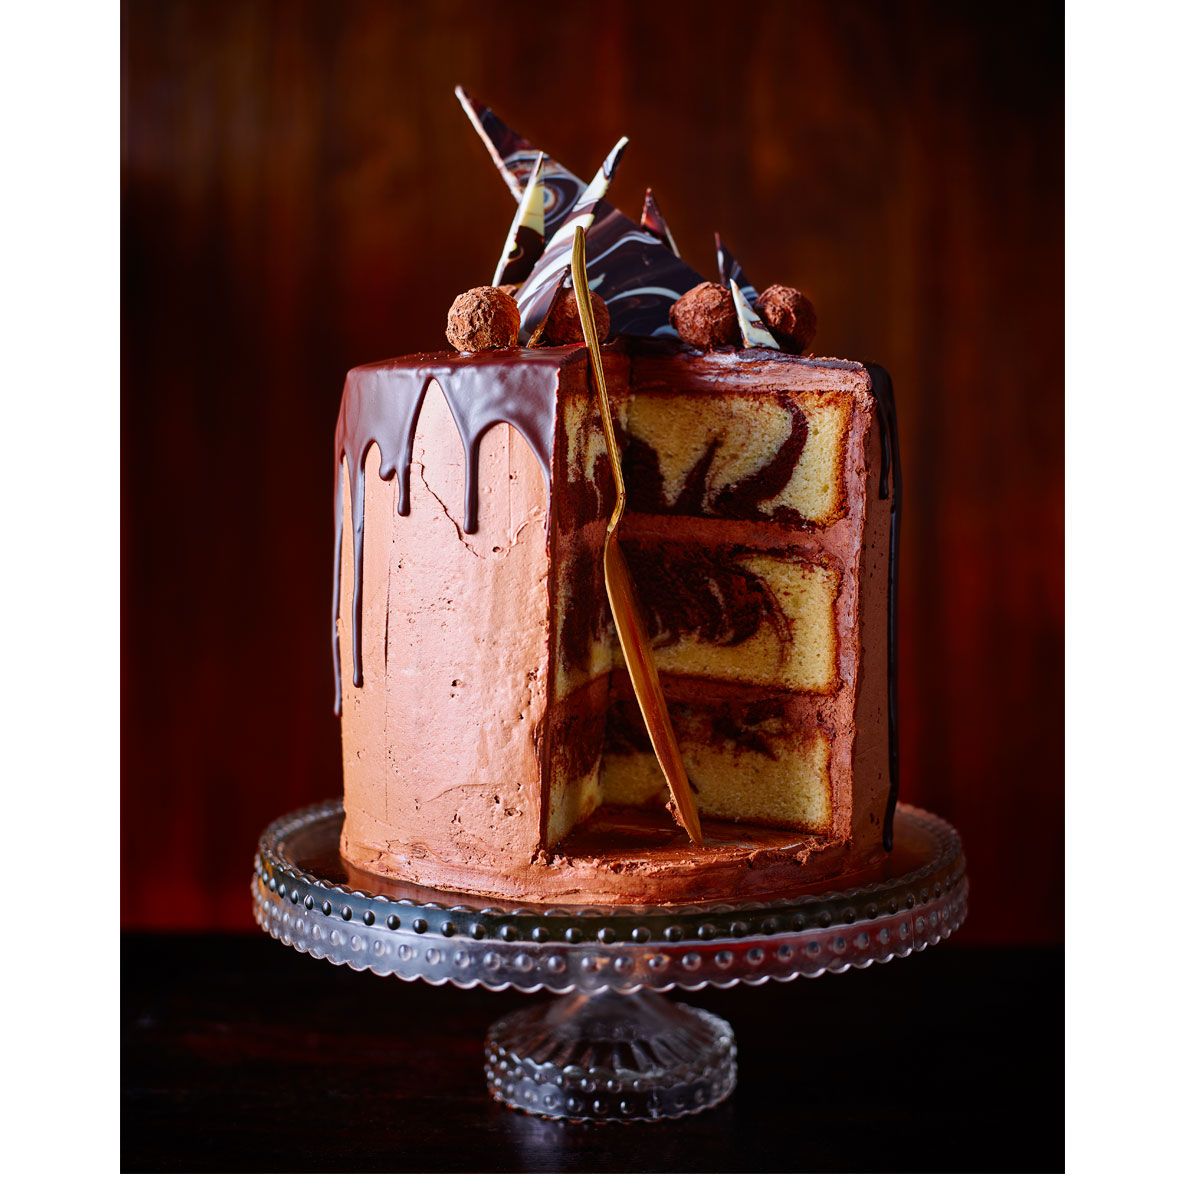 Chocolate Marble Cake Recipe | Chocolate & Zucchini-hoanganhbinhduong.edu.vn